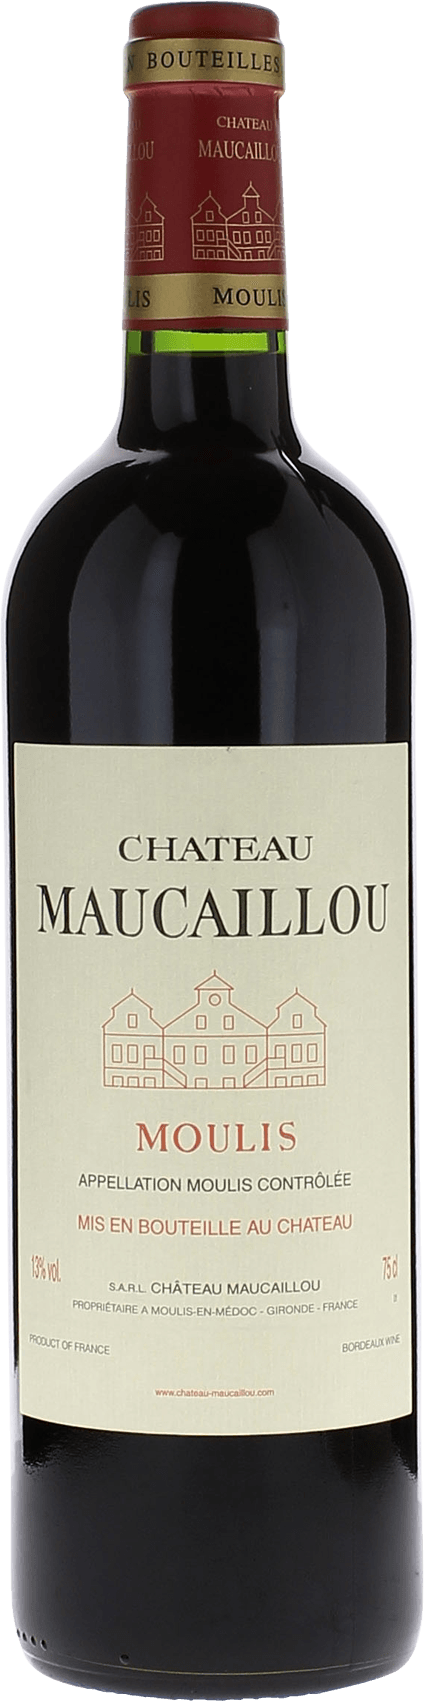 Maucaillou 1995  Moulis, Bordeaux rouge